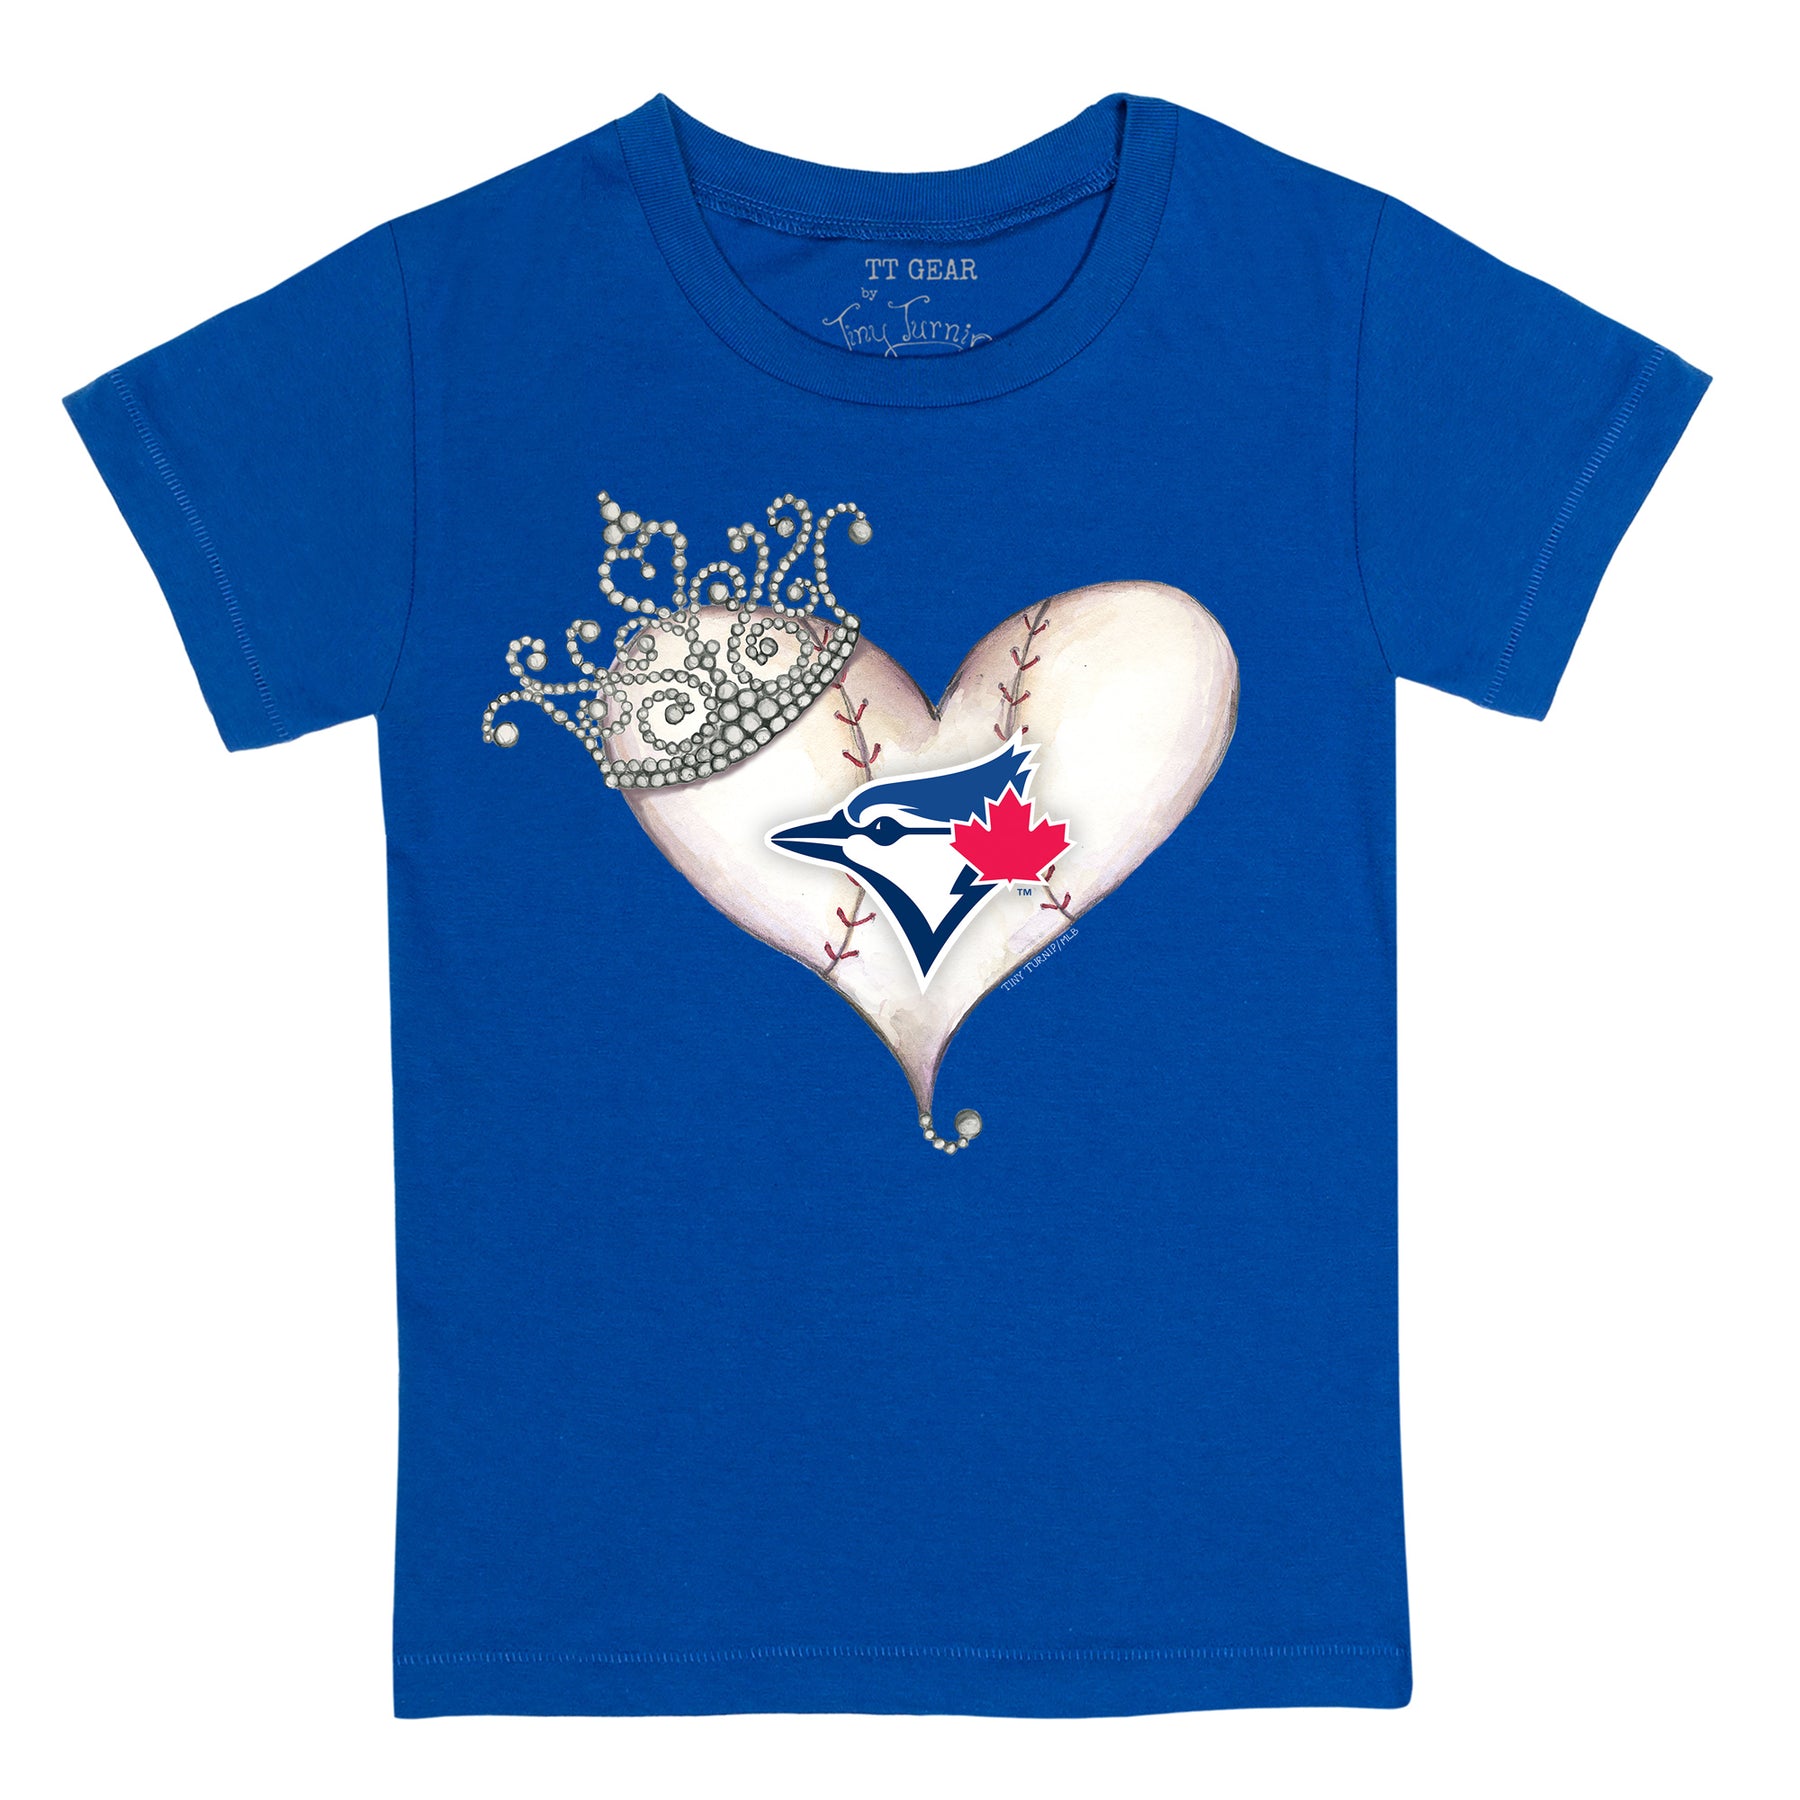 Girls Youth Tiny Turnip White Houston Astros Baseball Tiara Heart Fringe T-Shirt Size: Large